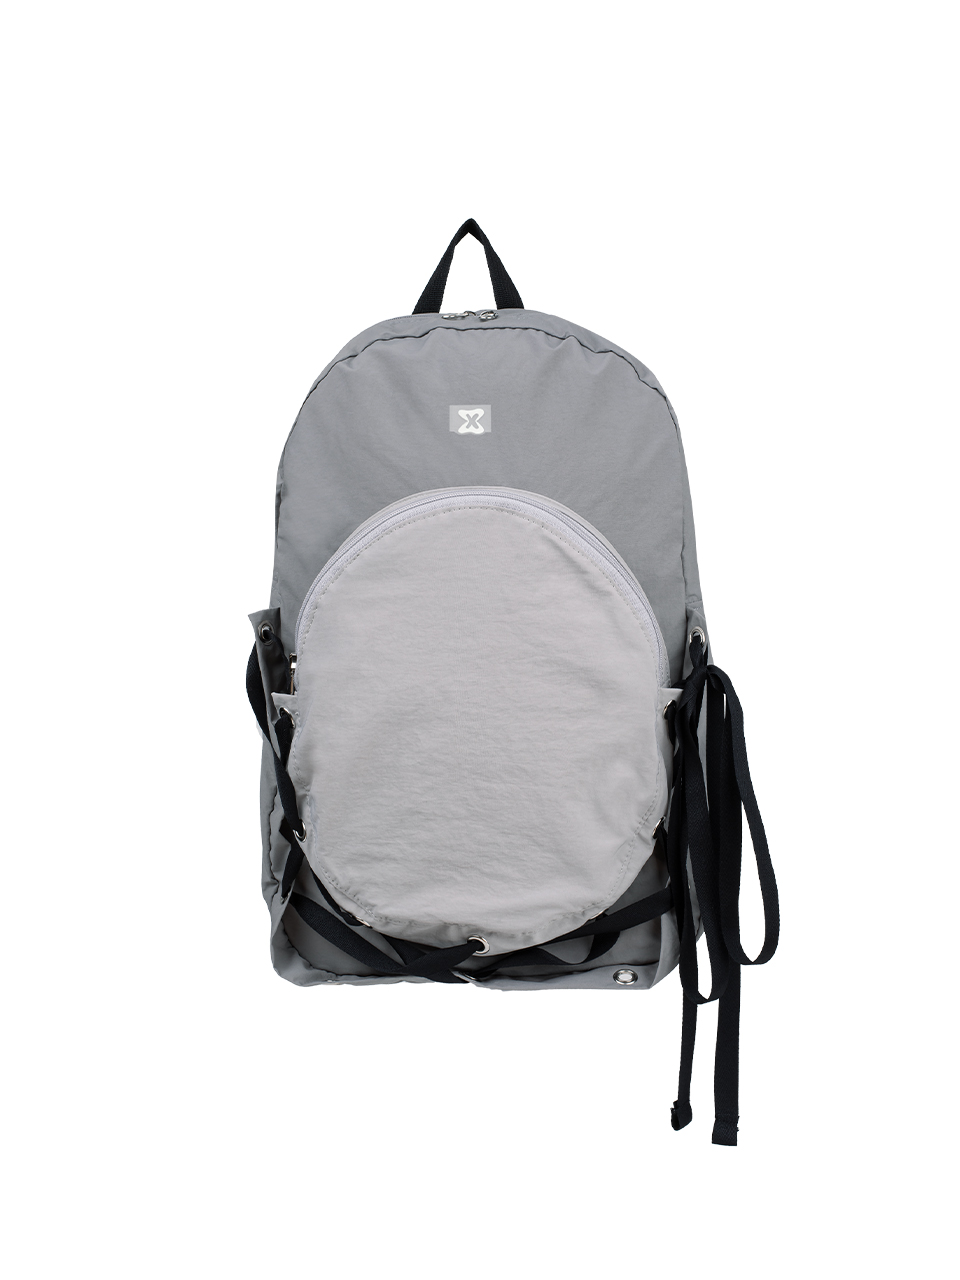 Nest Backpack (Gray)